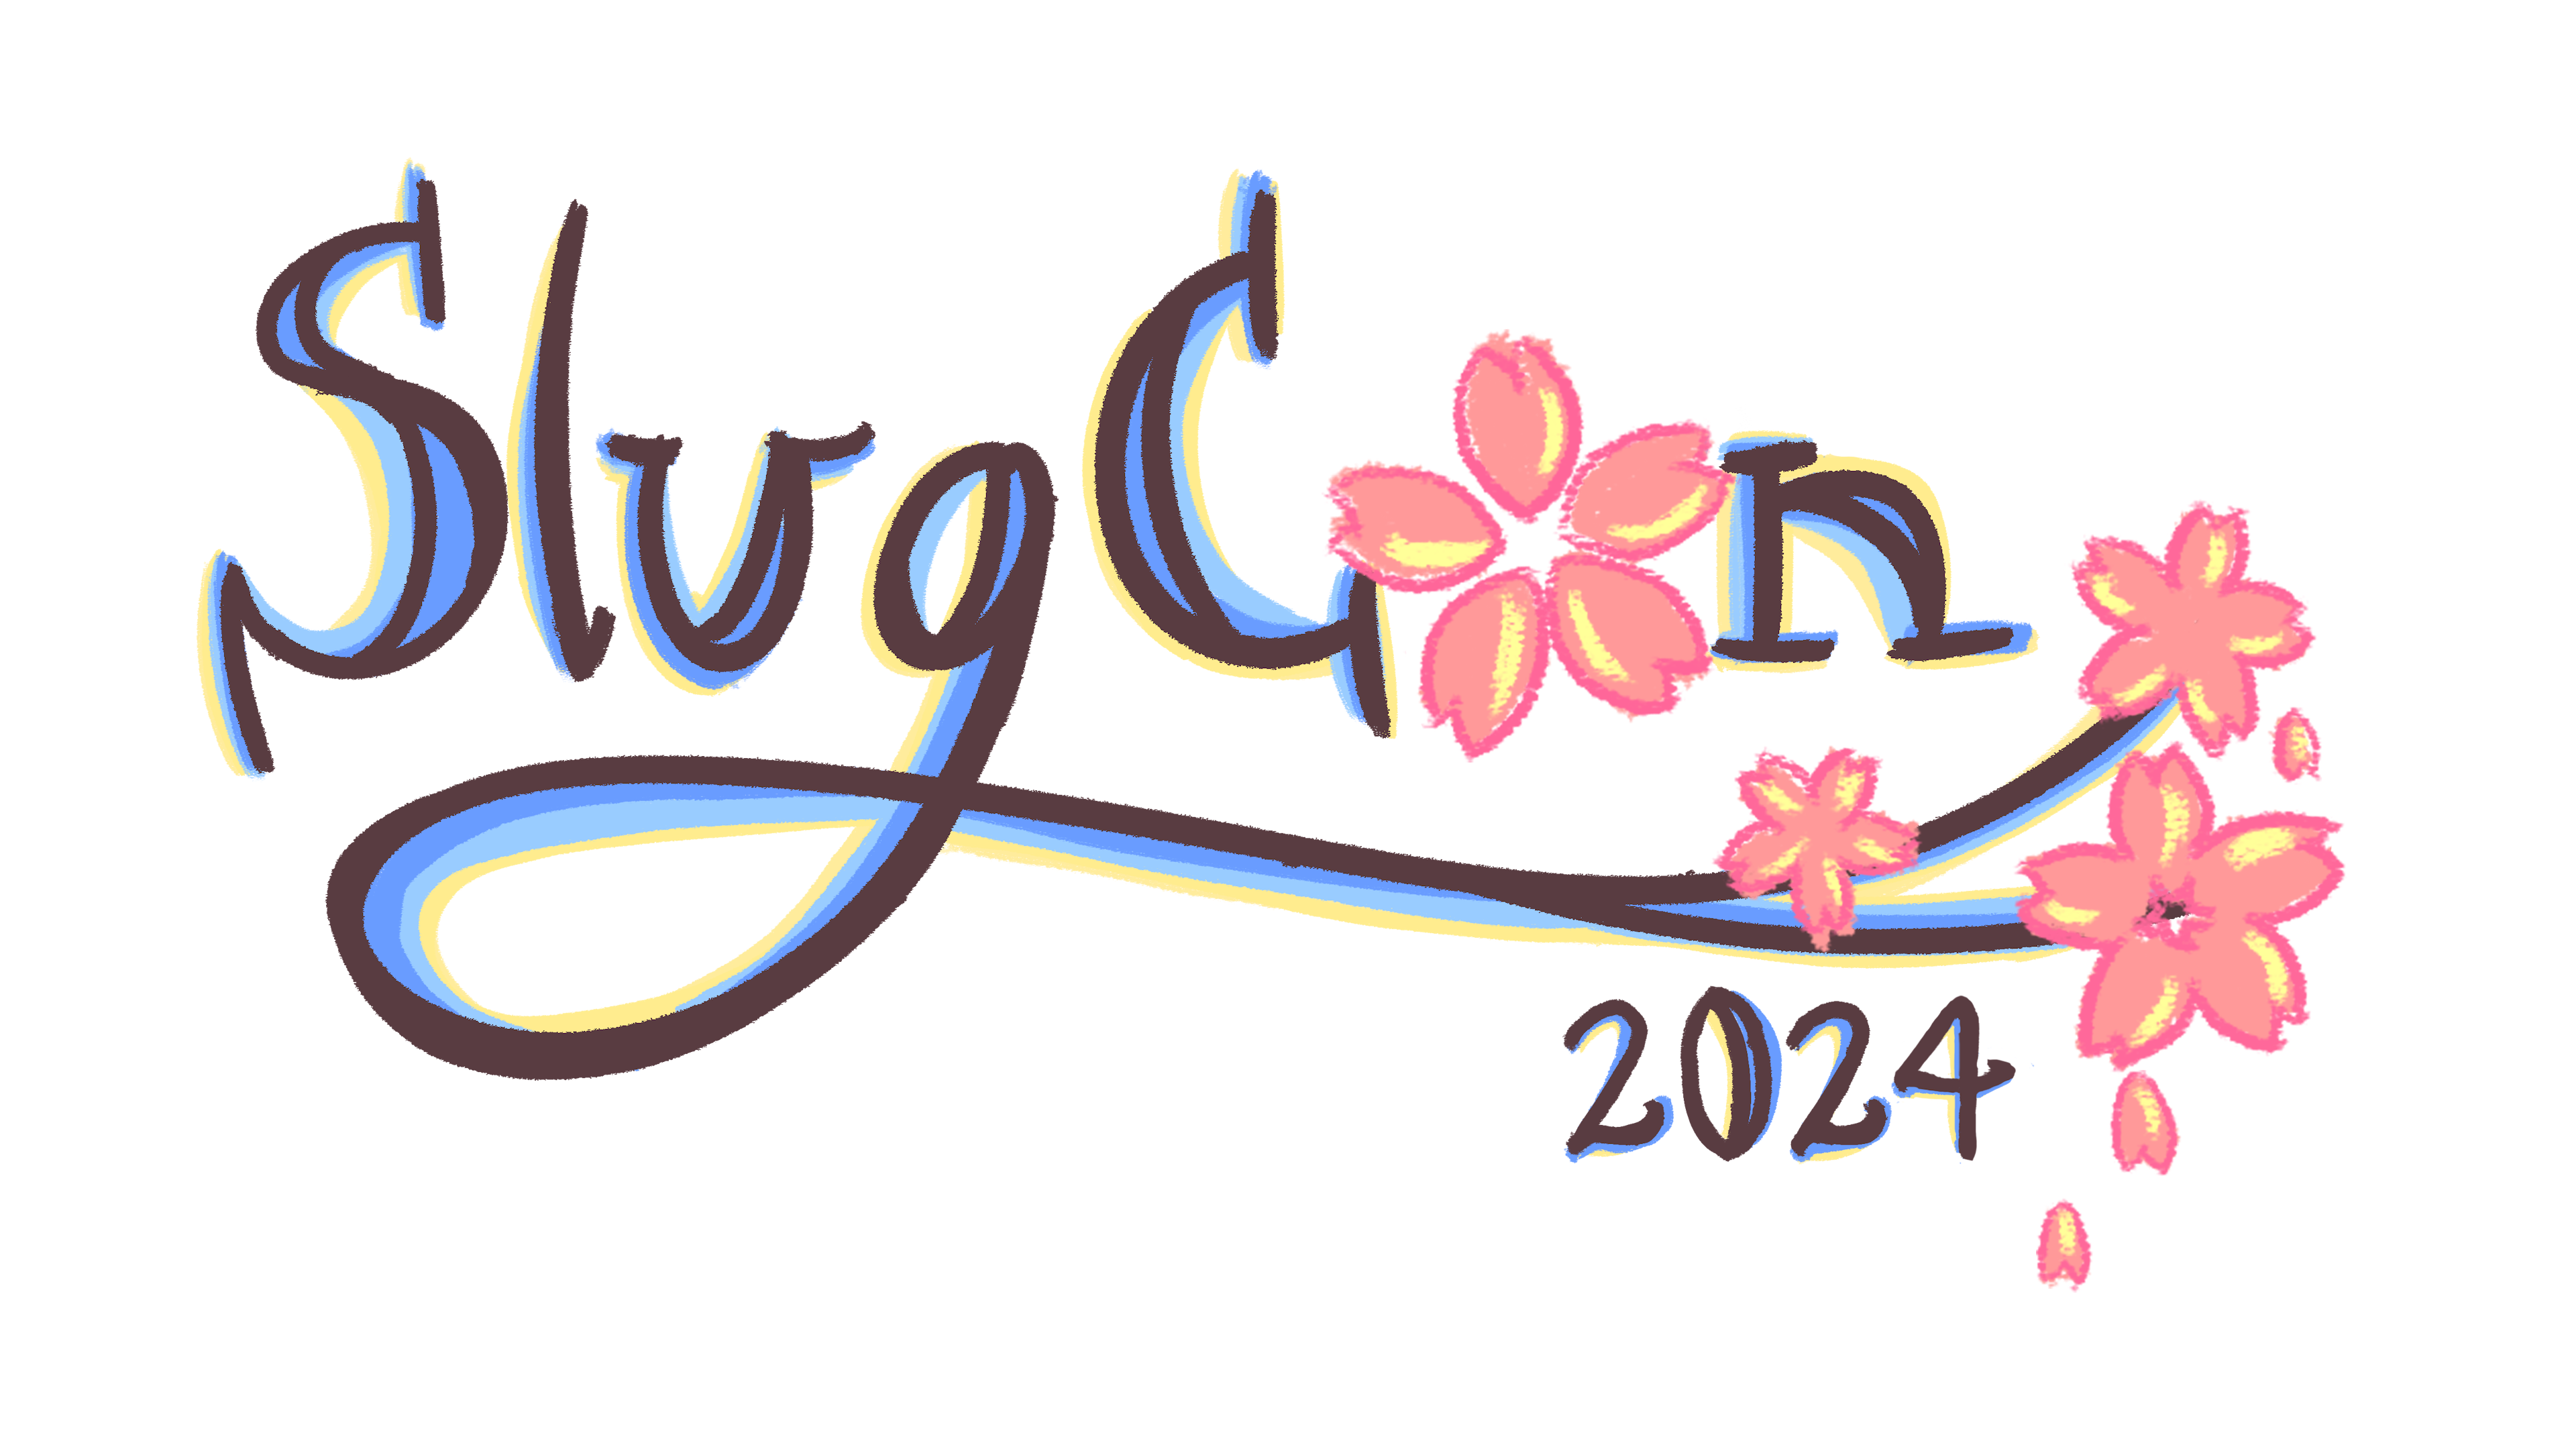 SlugCon 2024 logo